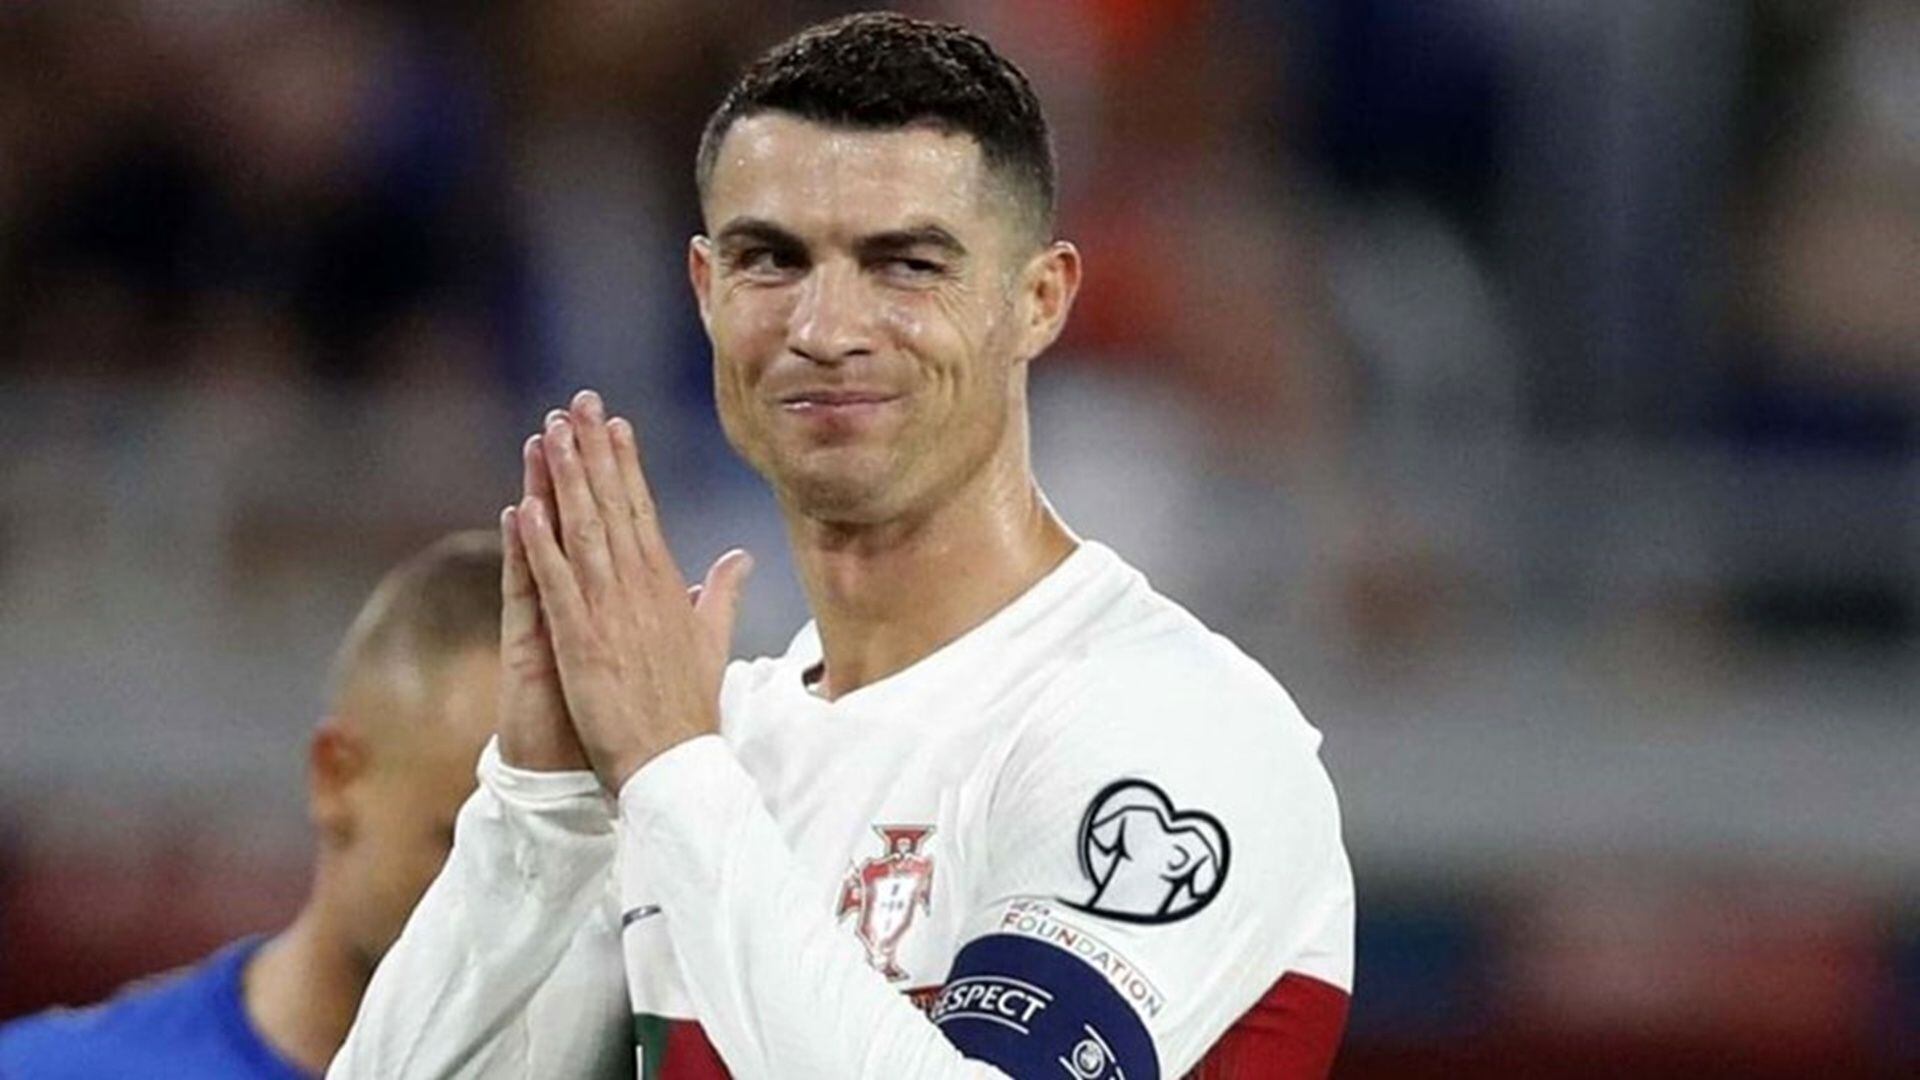 El desorbitante monto que exige Cristiano Ronaldo a un club de su pasado